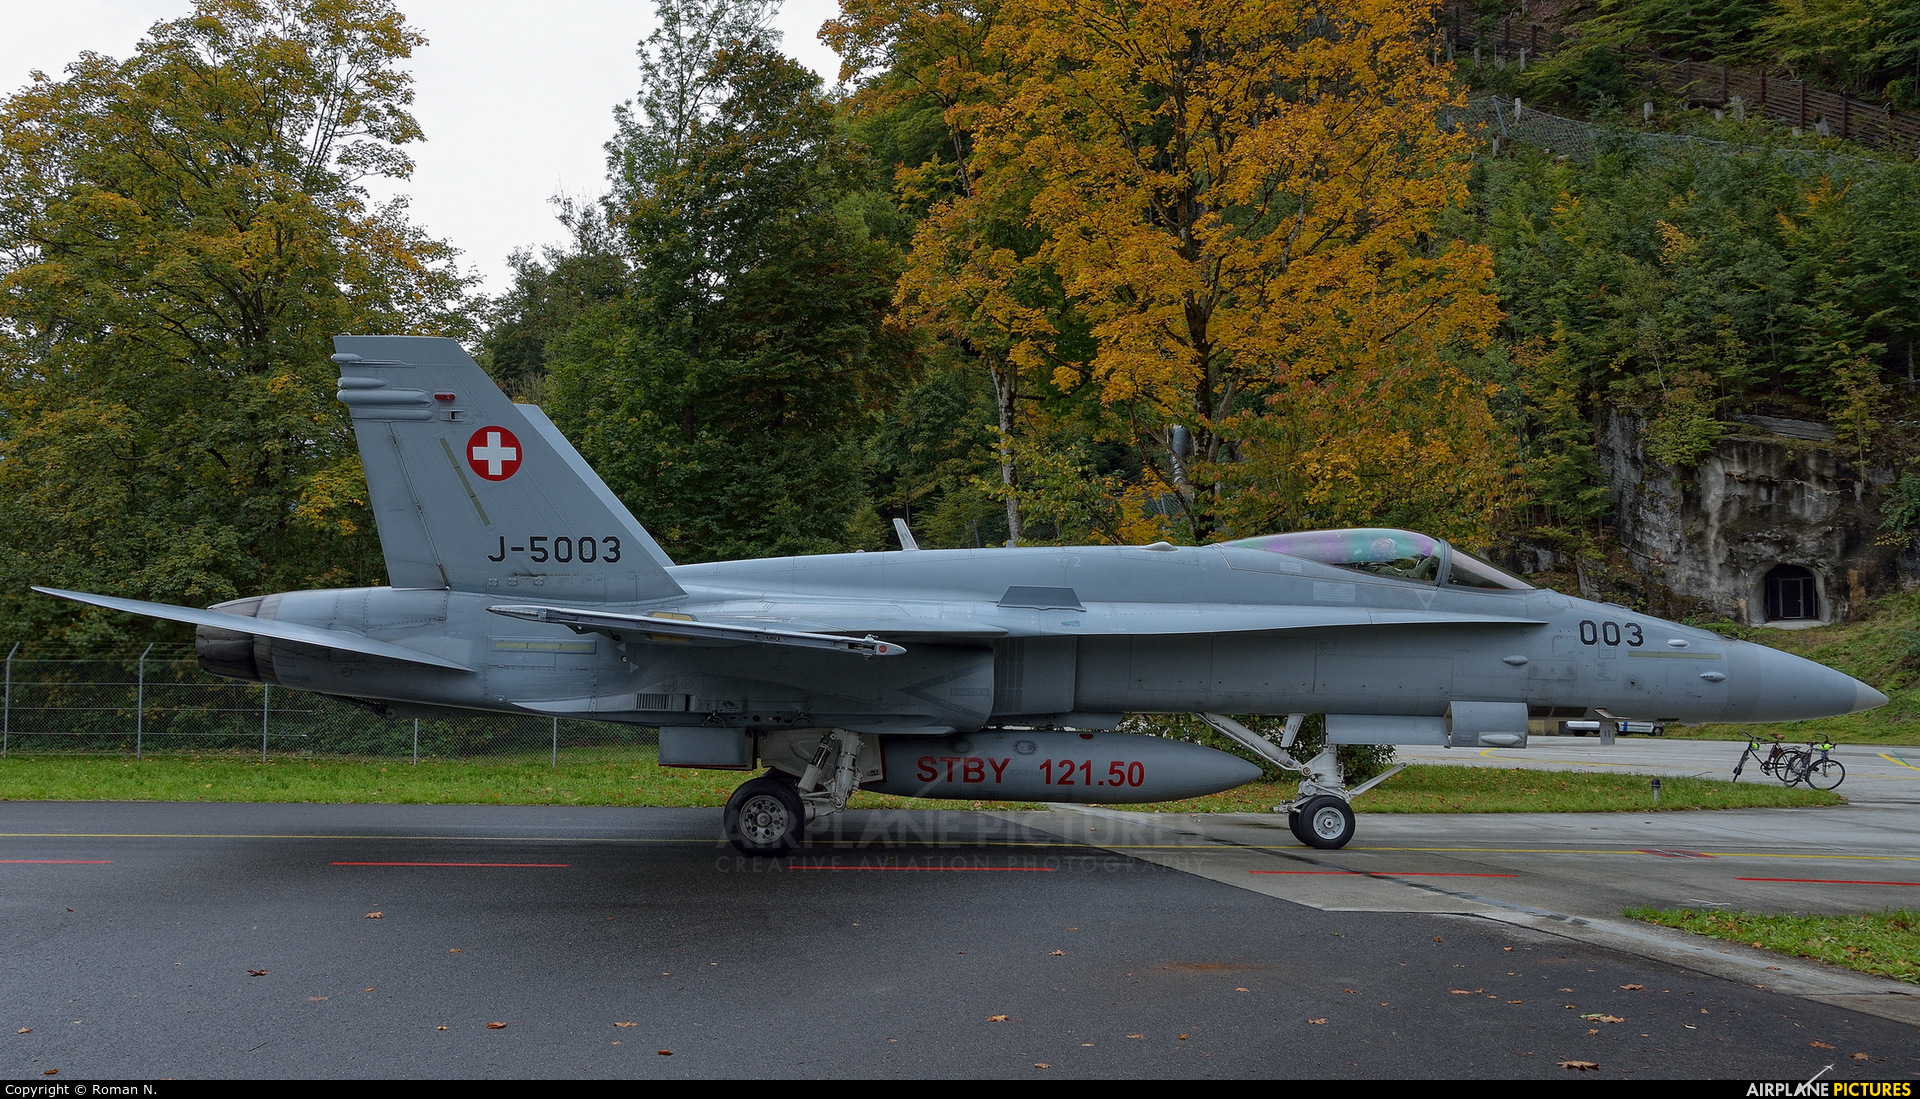 Switzerland - Air Force J-5003 aircraft at Meiringen